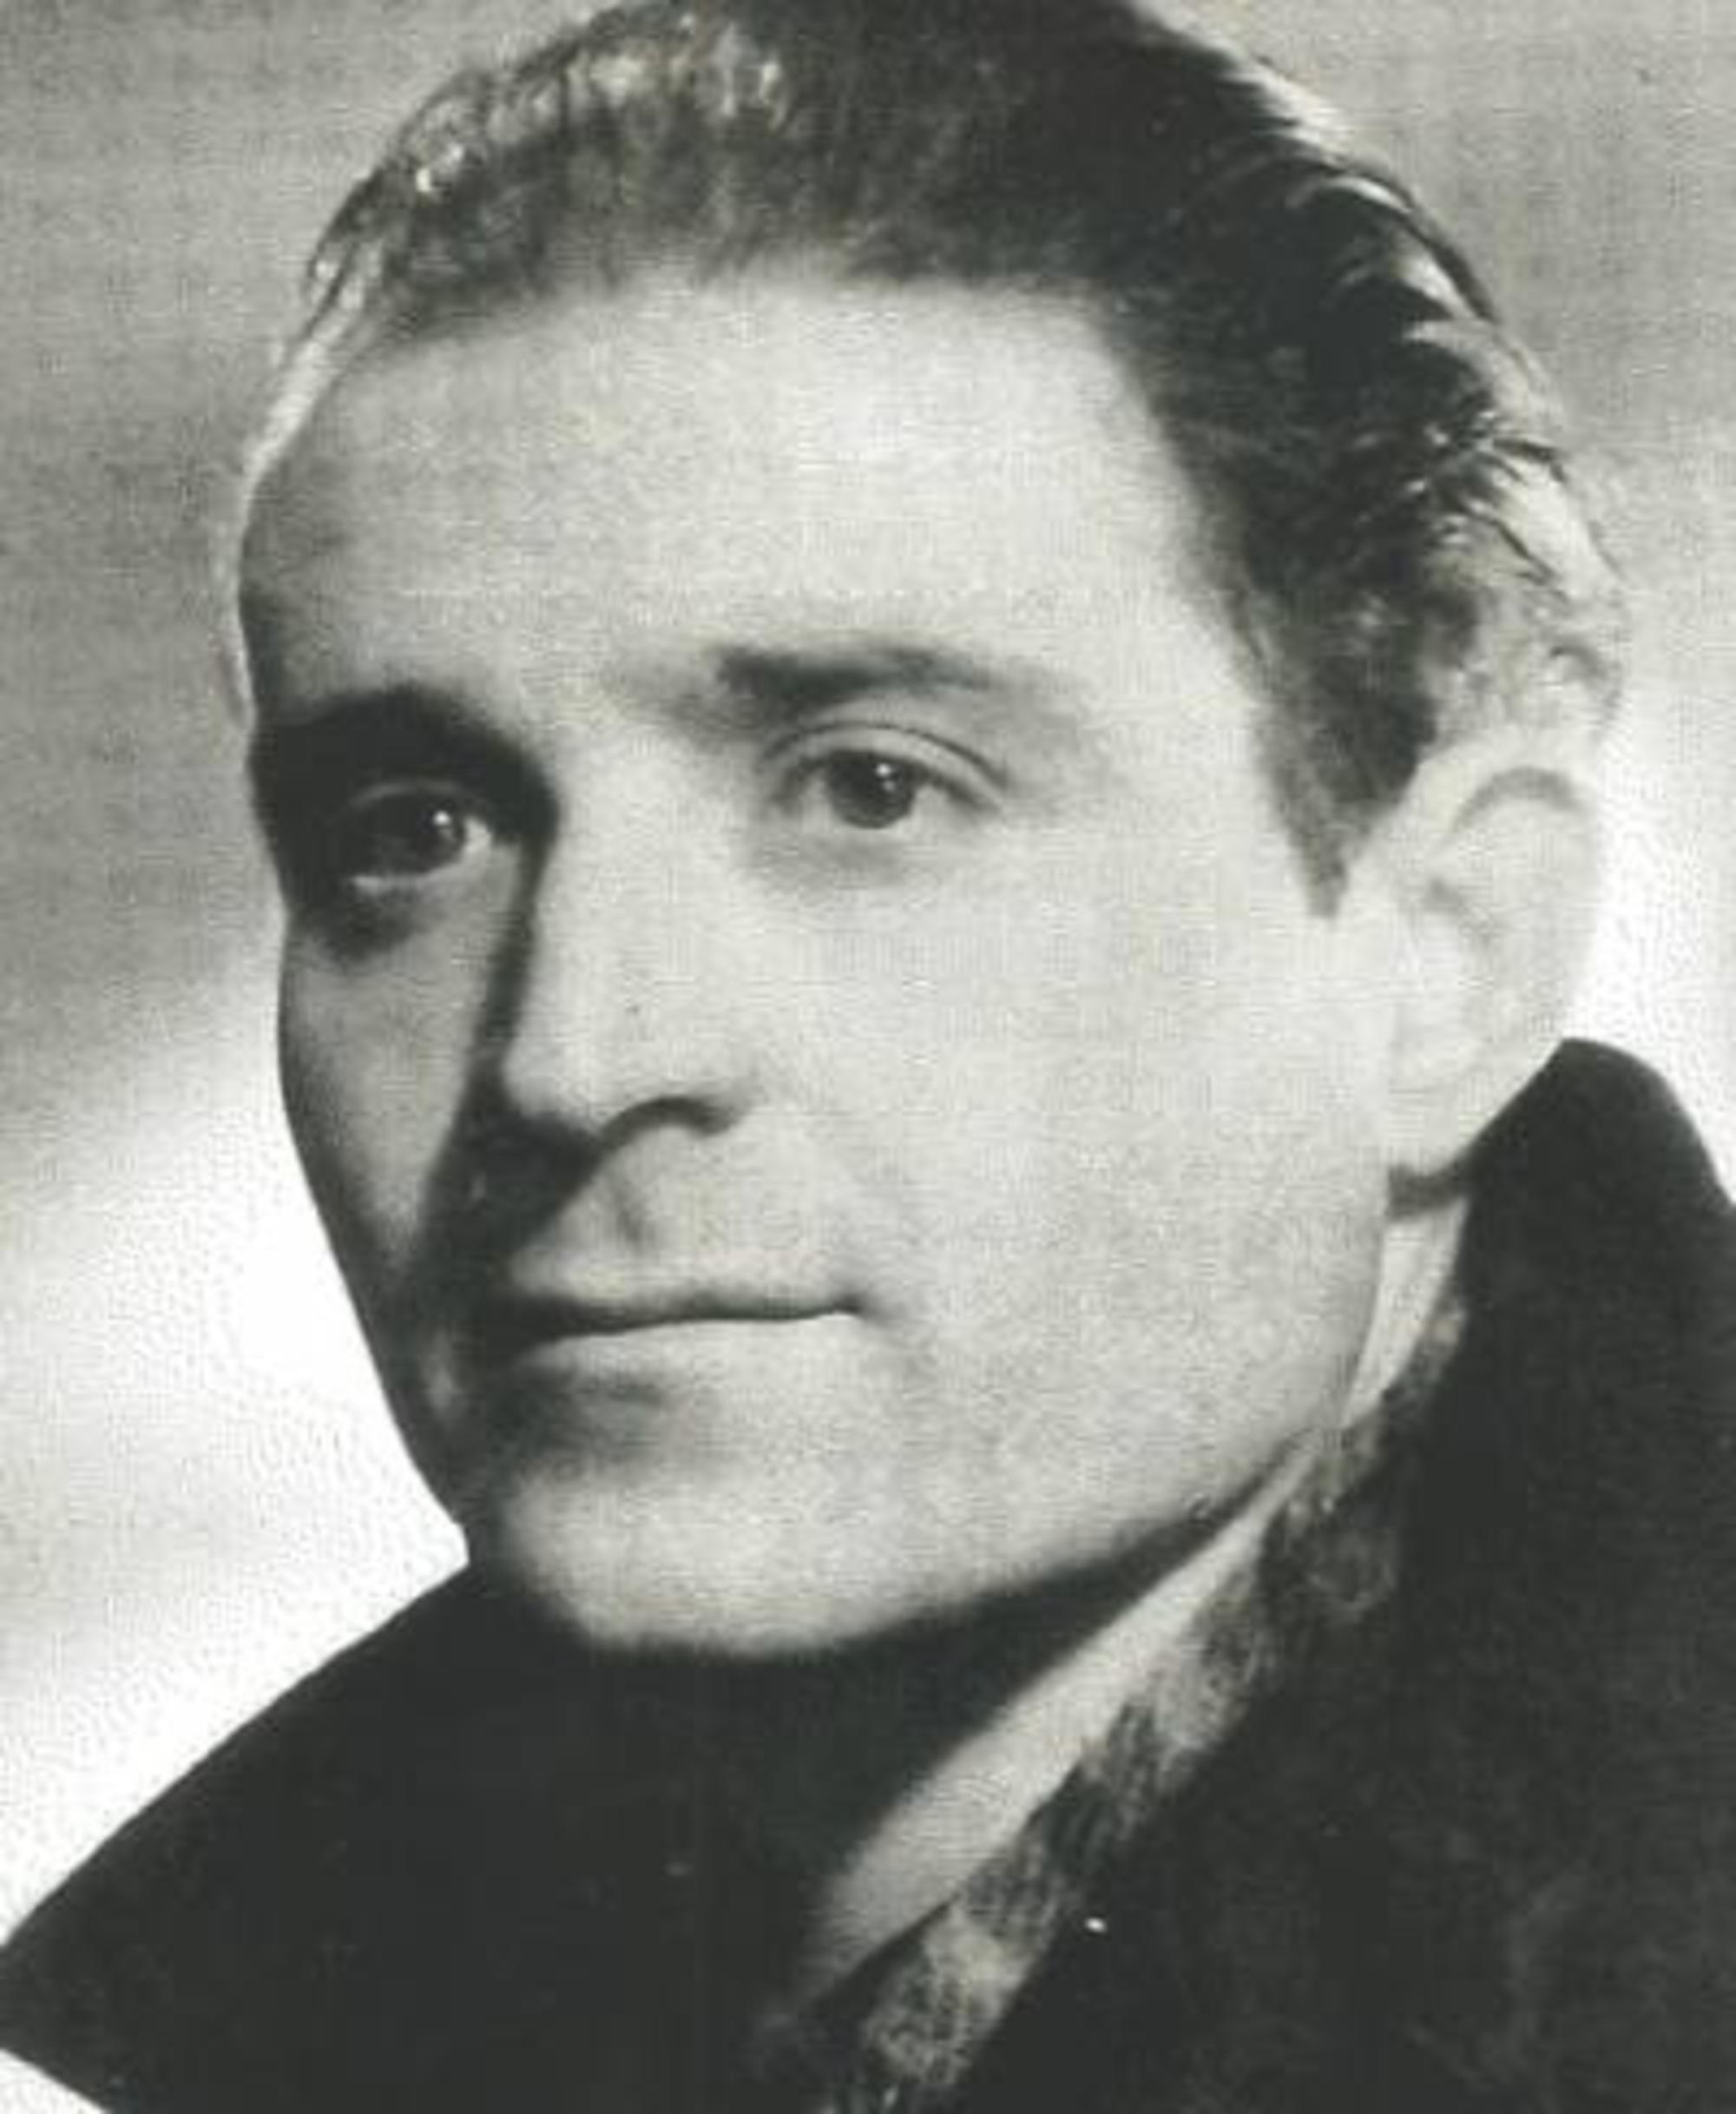 Francisco Bailo Mata